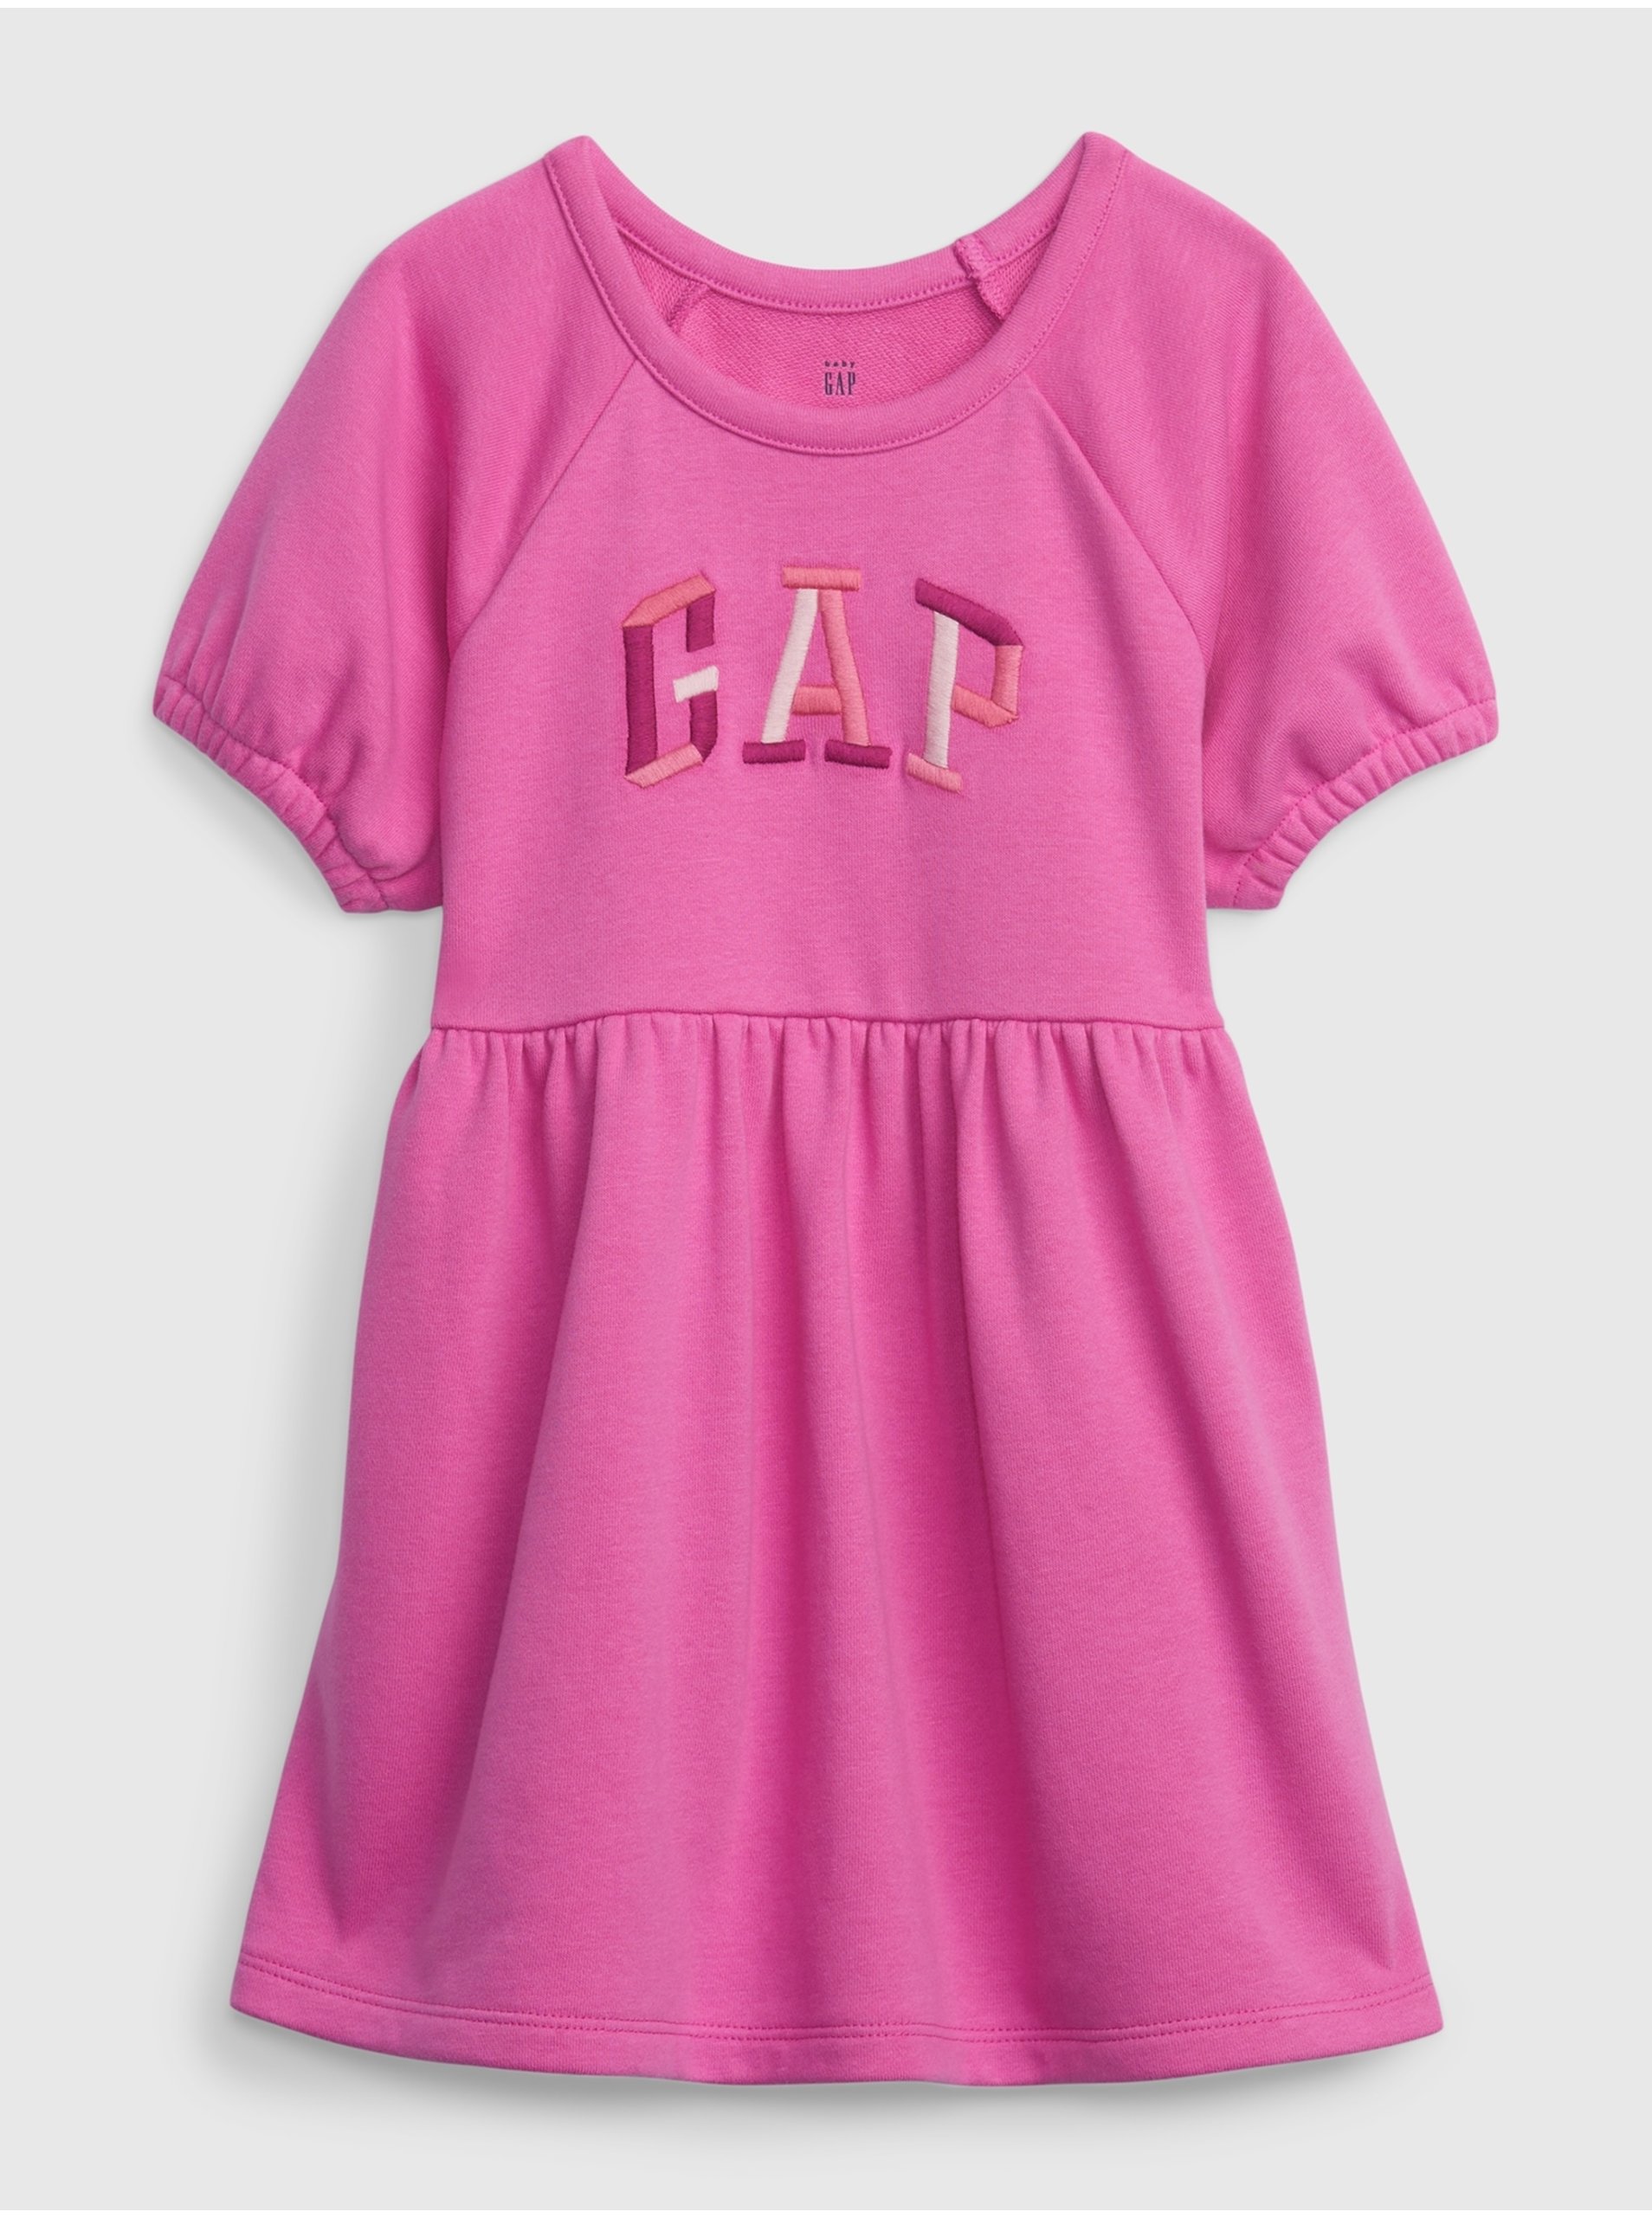 Lacno Tmavoružové dievčenské bavlnené šaty s logom GAP